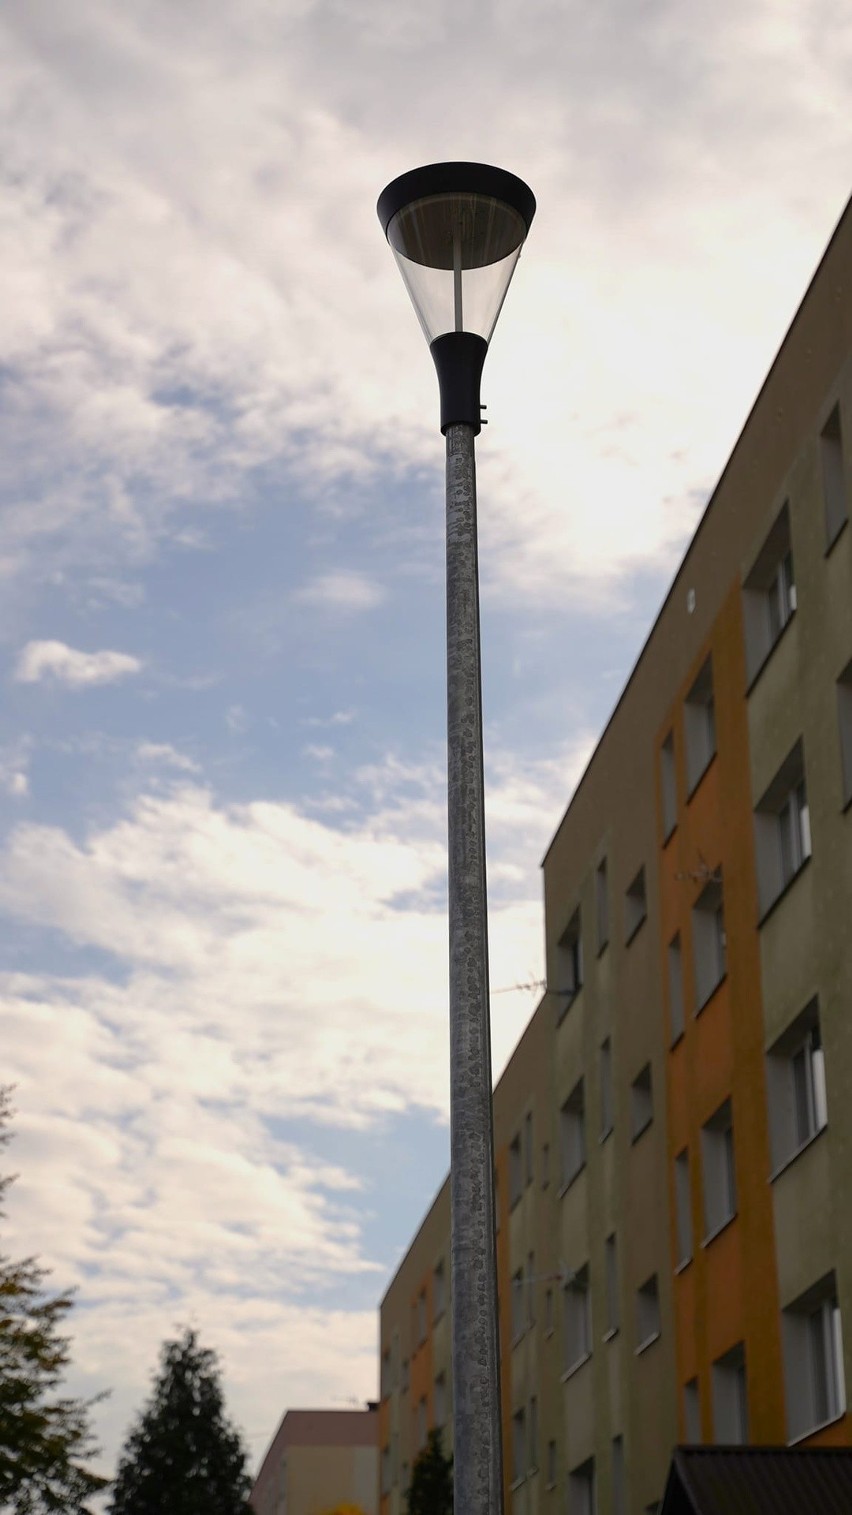 Nowe oświetlenie zamontowano na osiedlu Piaski w Kozienicach. Odbył się już odbiór inwestycji